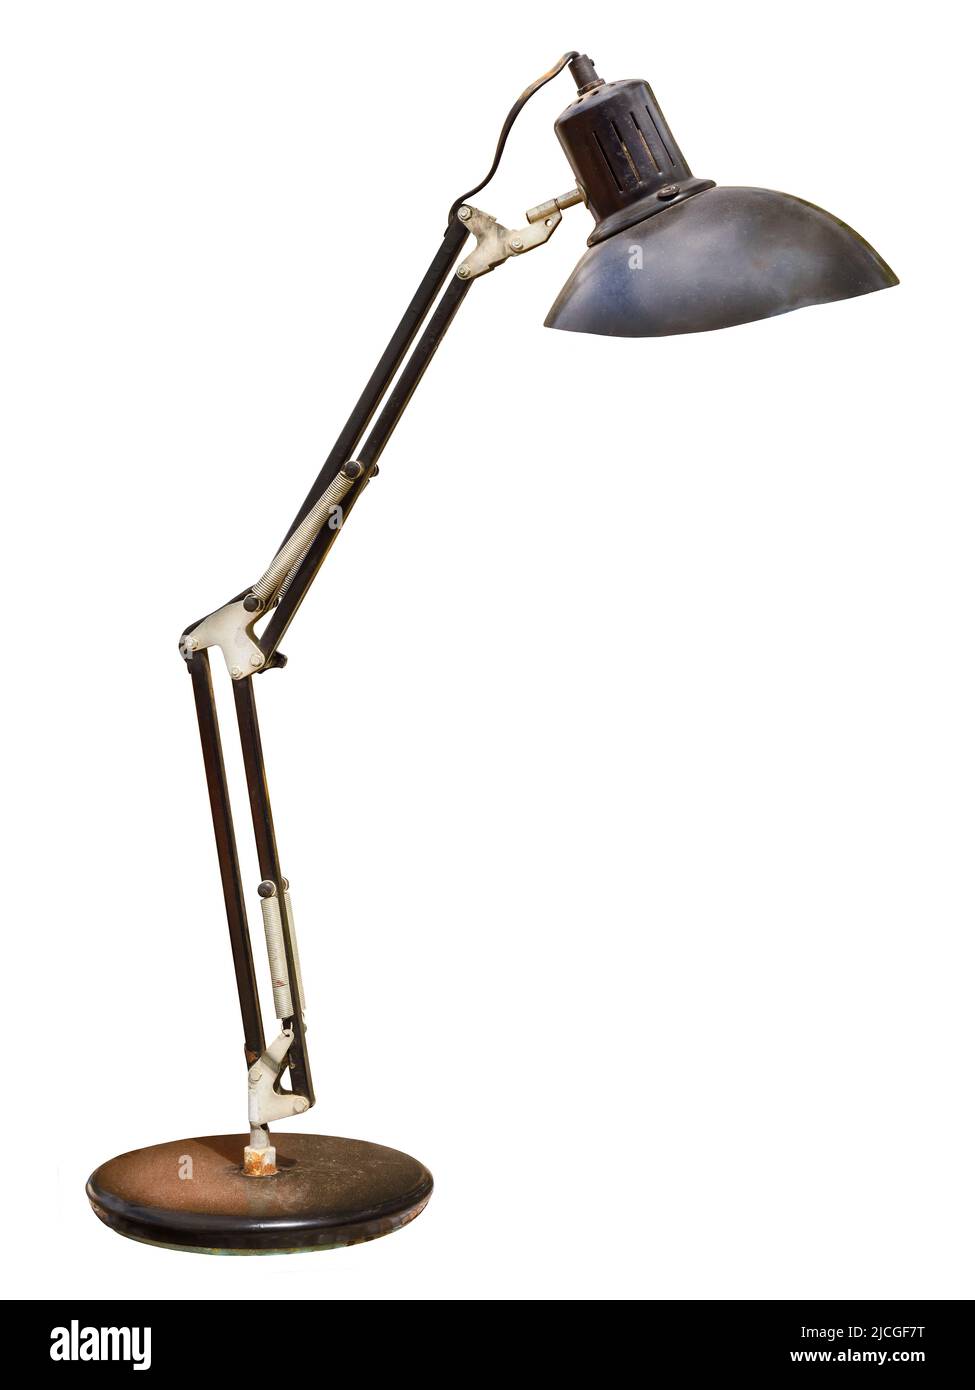 Lámpara de escritorio oxidada de estilo vintage con brazos flexibles aislados sobre un fondo blanco Foto de stock